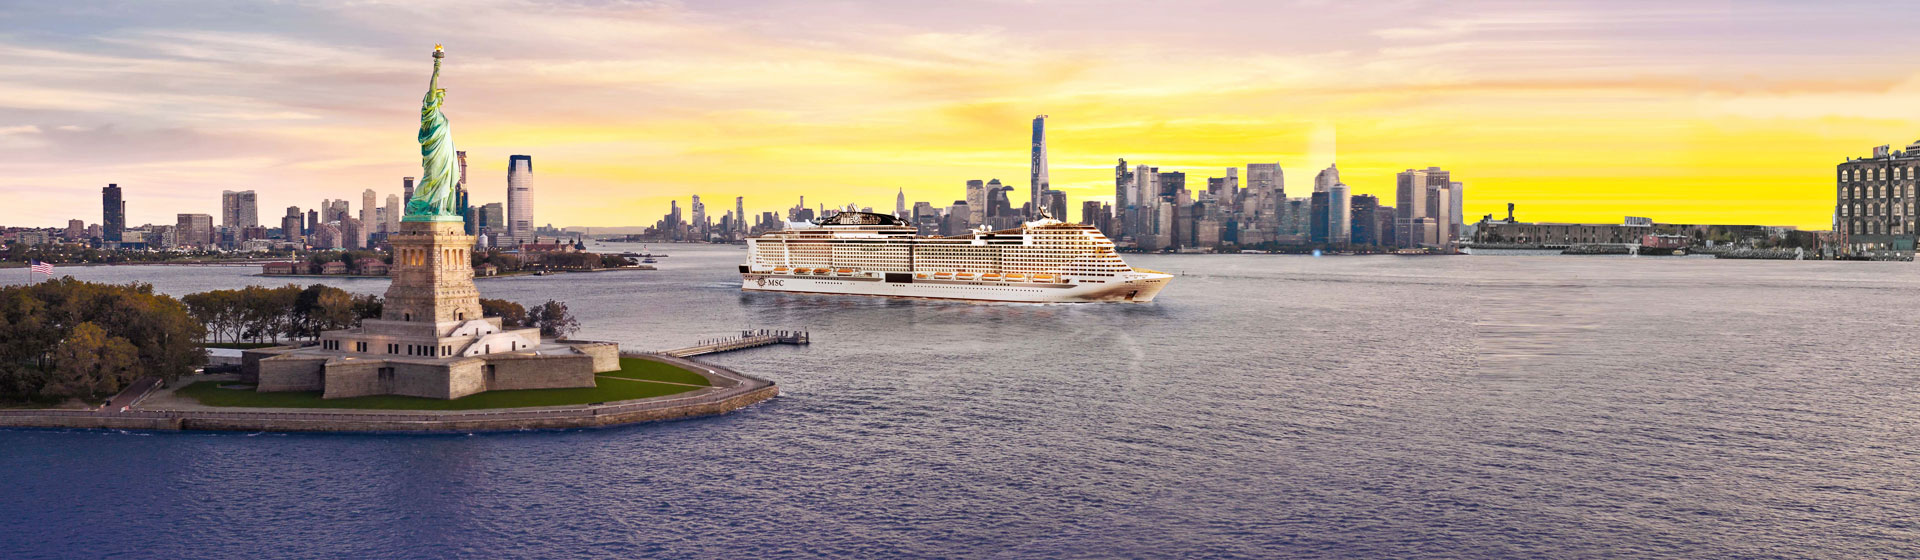 MSC Cruises Meraviglia i New York.